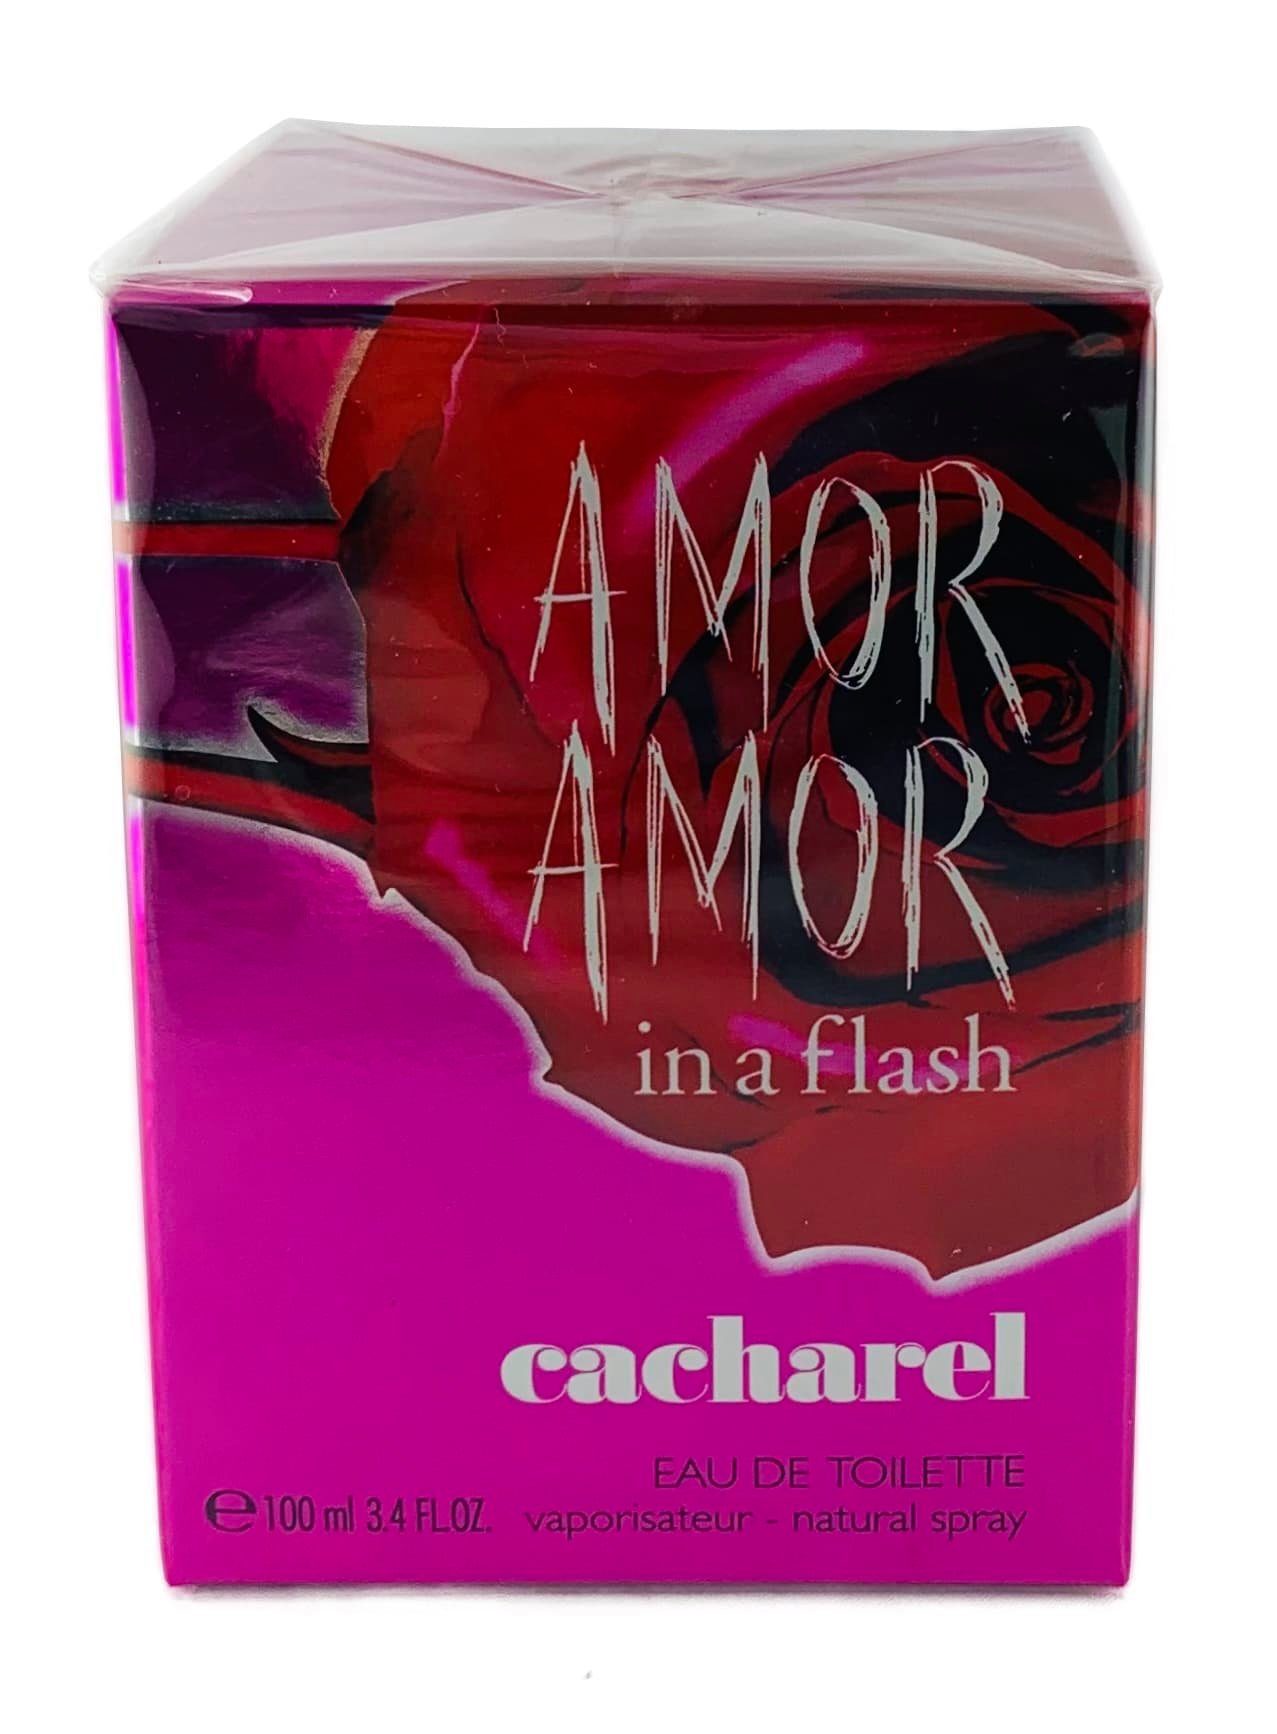 CACHAREL Eau de Toilette Edt flash Spray 100 in "AMOR ml Cacharel AMOR" a